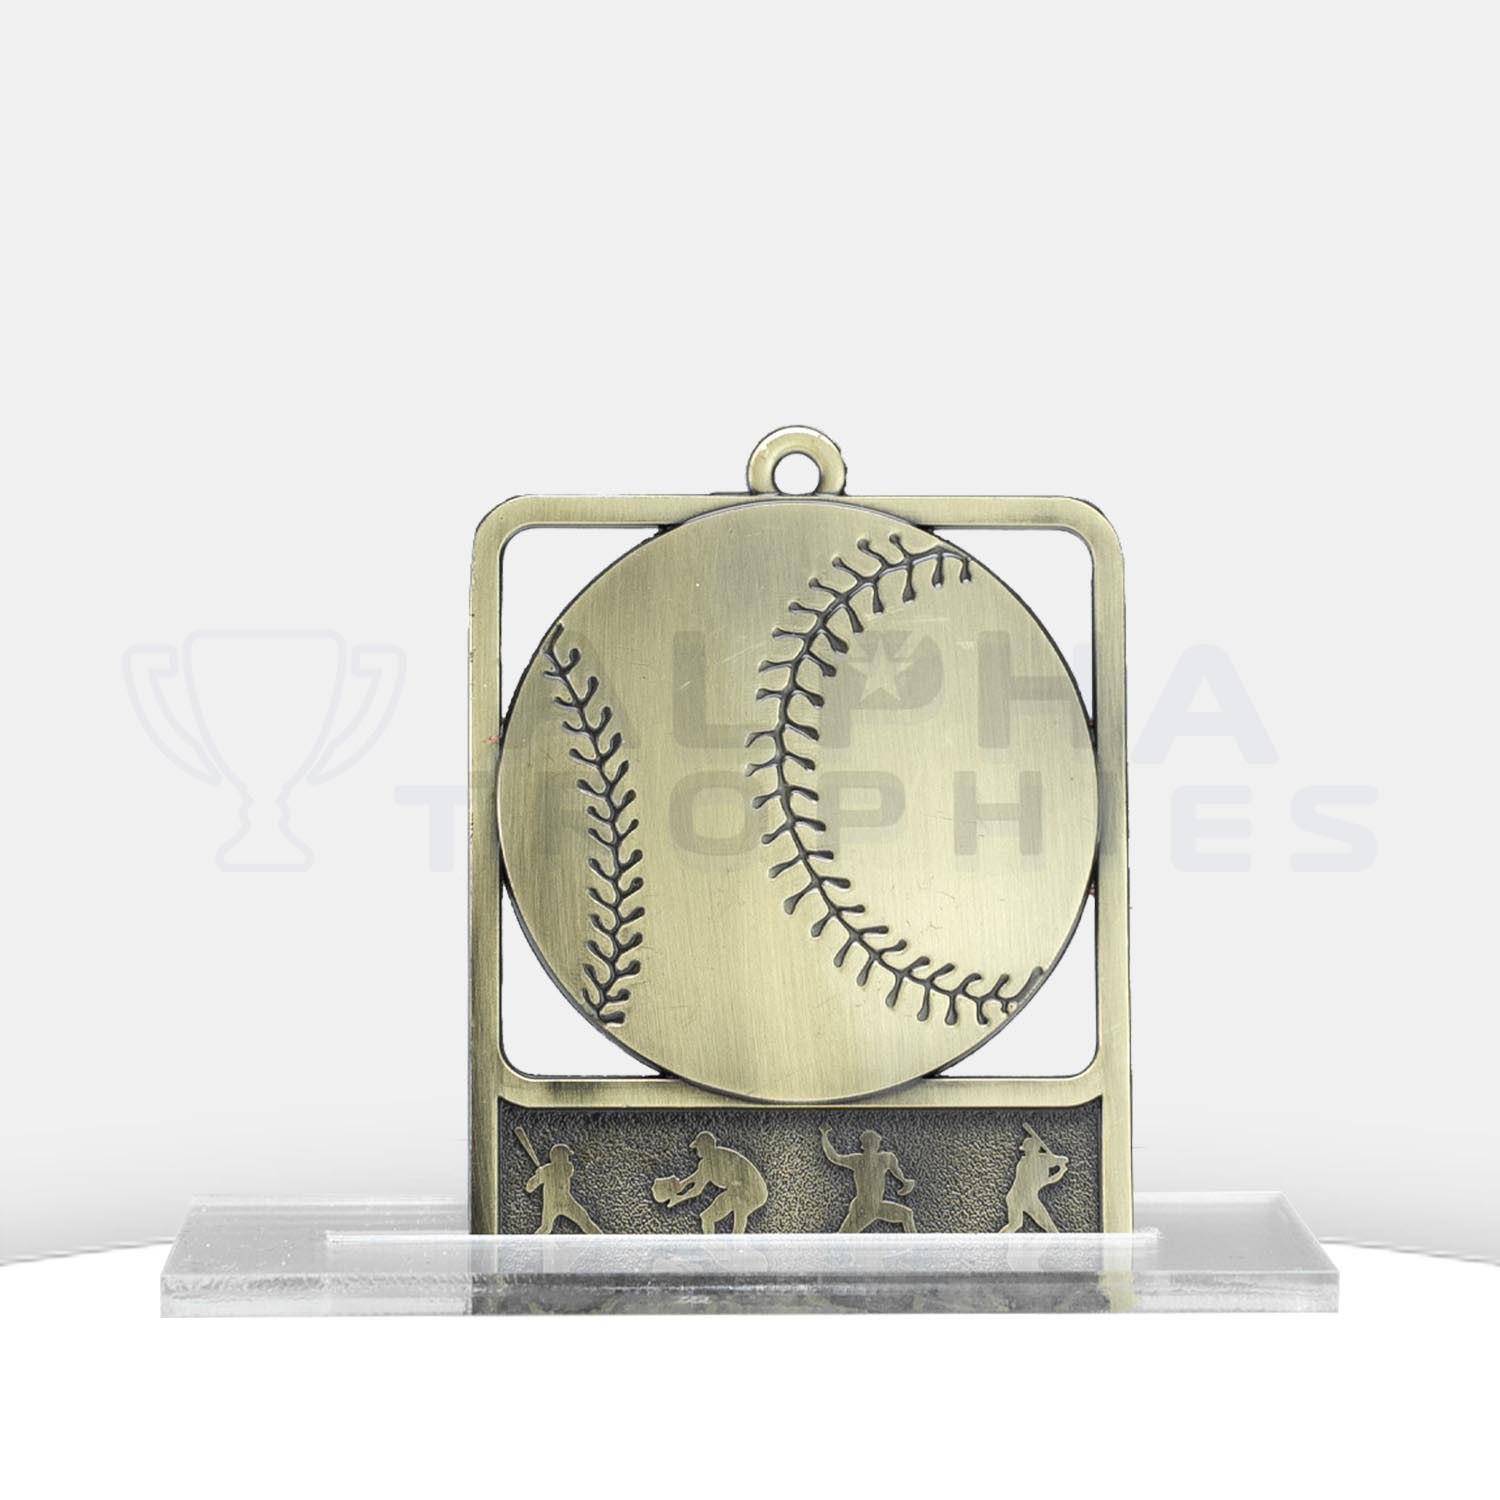 Baseball / Softball Medal Rosetta